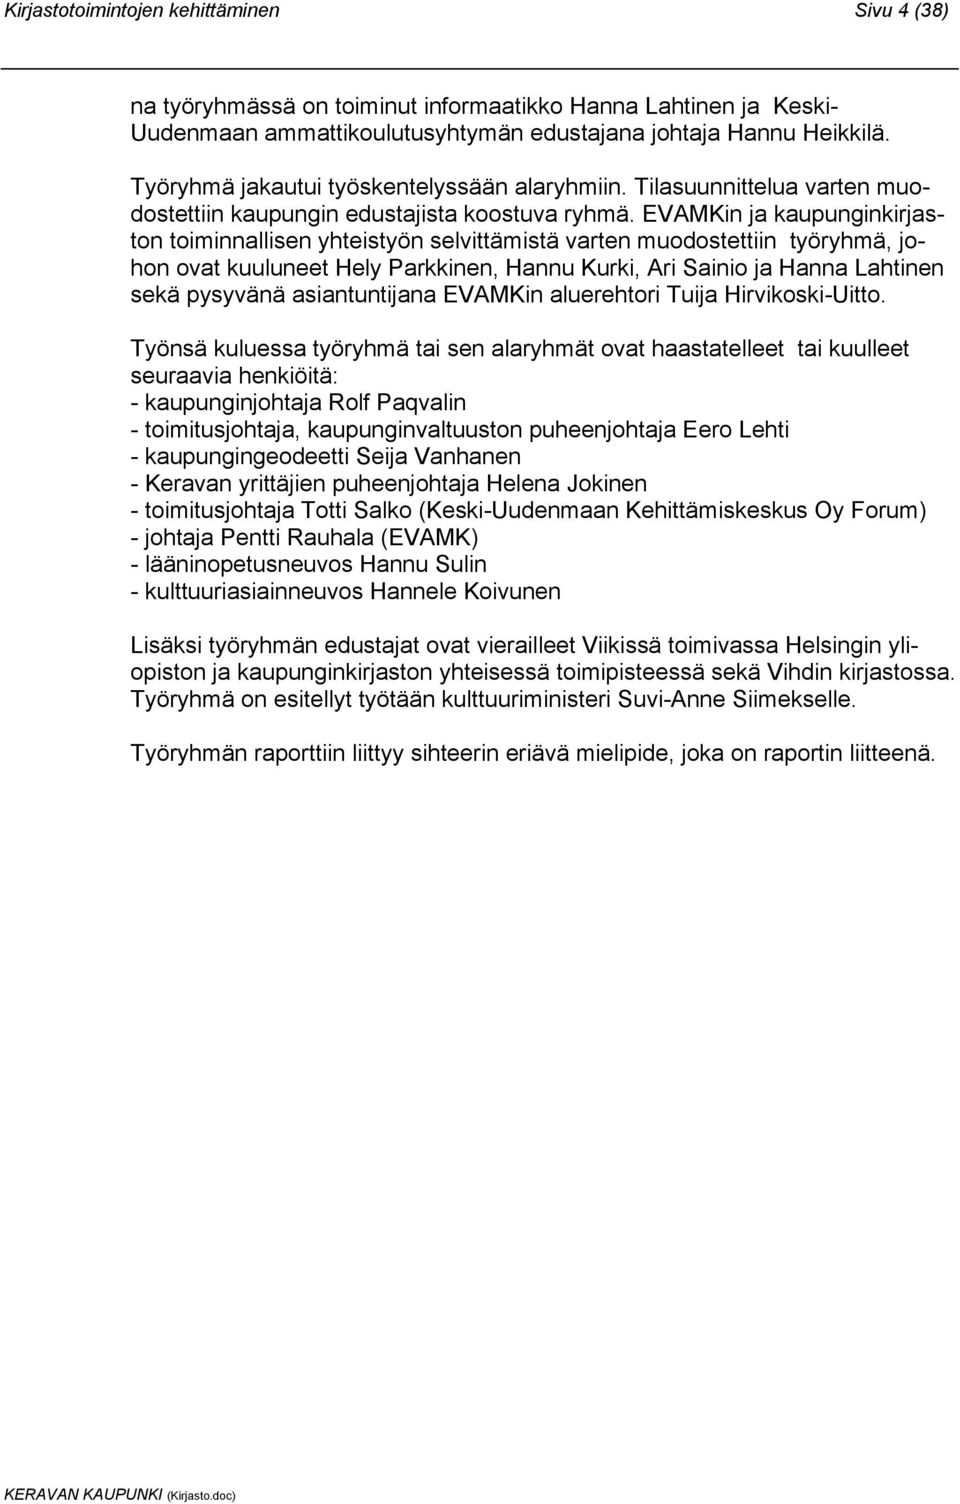 EVAMKin ja kaupunginkirjaston toiminnallisen yhteistyön selvittämistä varten muodostettiin työryhmä, johon ovat kuuluneet Hely Parkkinen, Hannu Kurki, Ari Sainio ja Hanna Lahtinen sekä pysyvänä